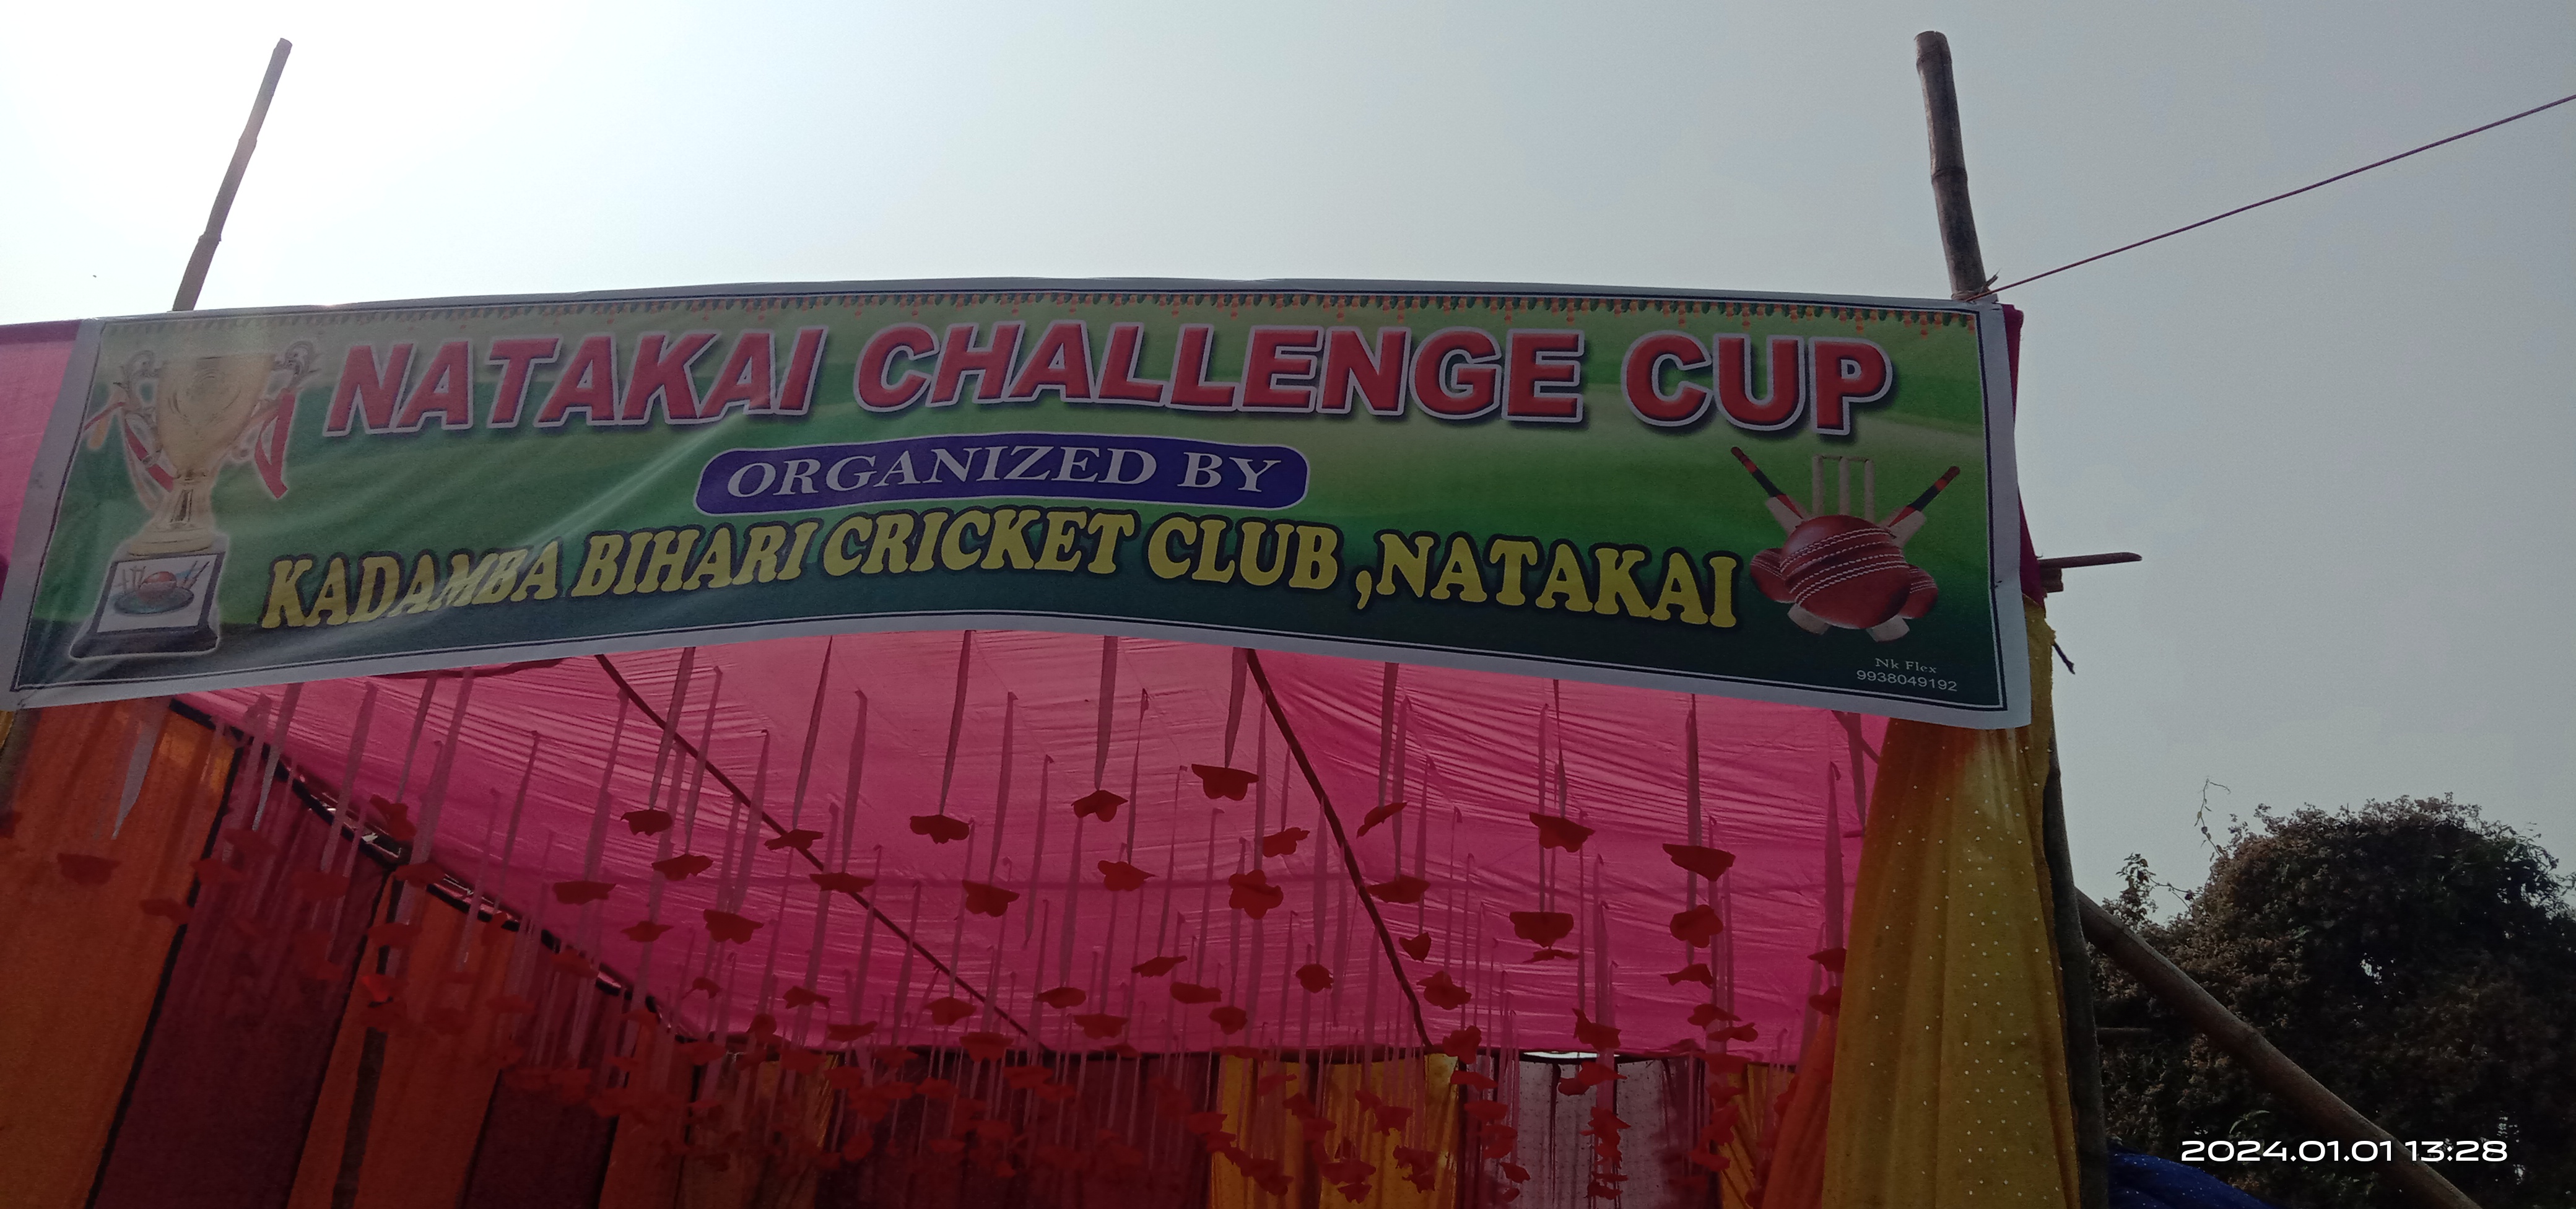 NATAKAI CHALLENGE CUP